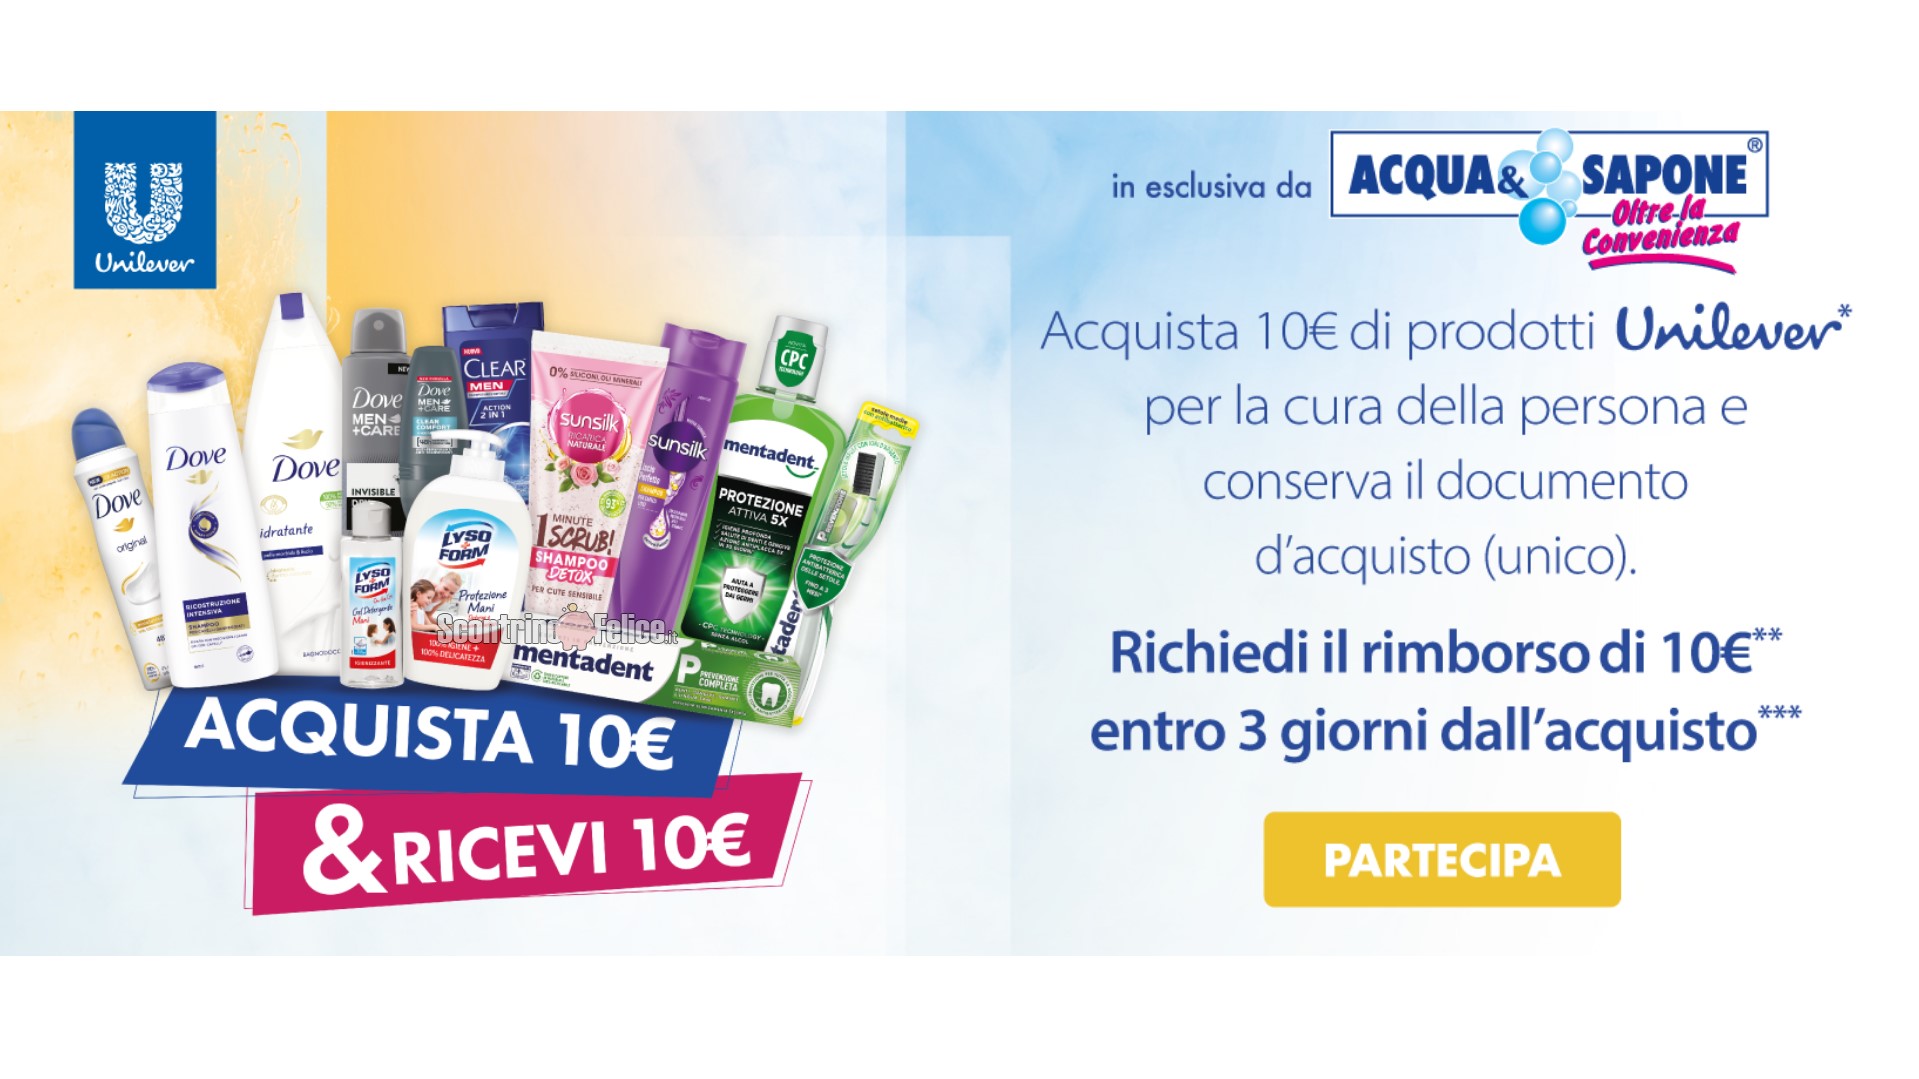 Cashback Unilever "Acquista 10€ & Ricevi 10€": come richiedere il rimborso